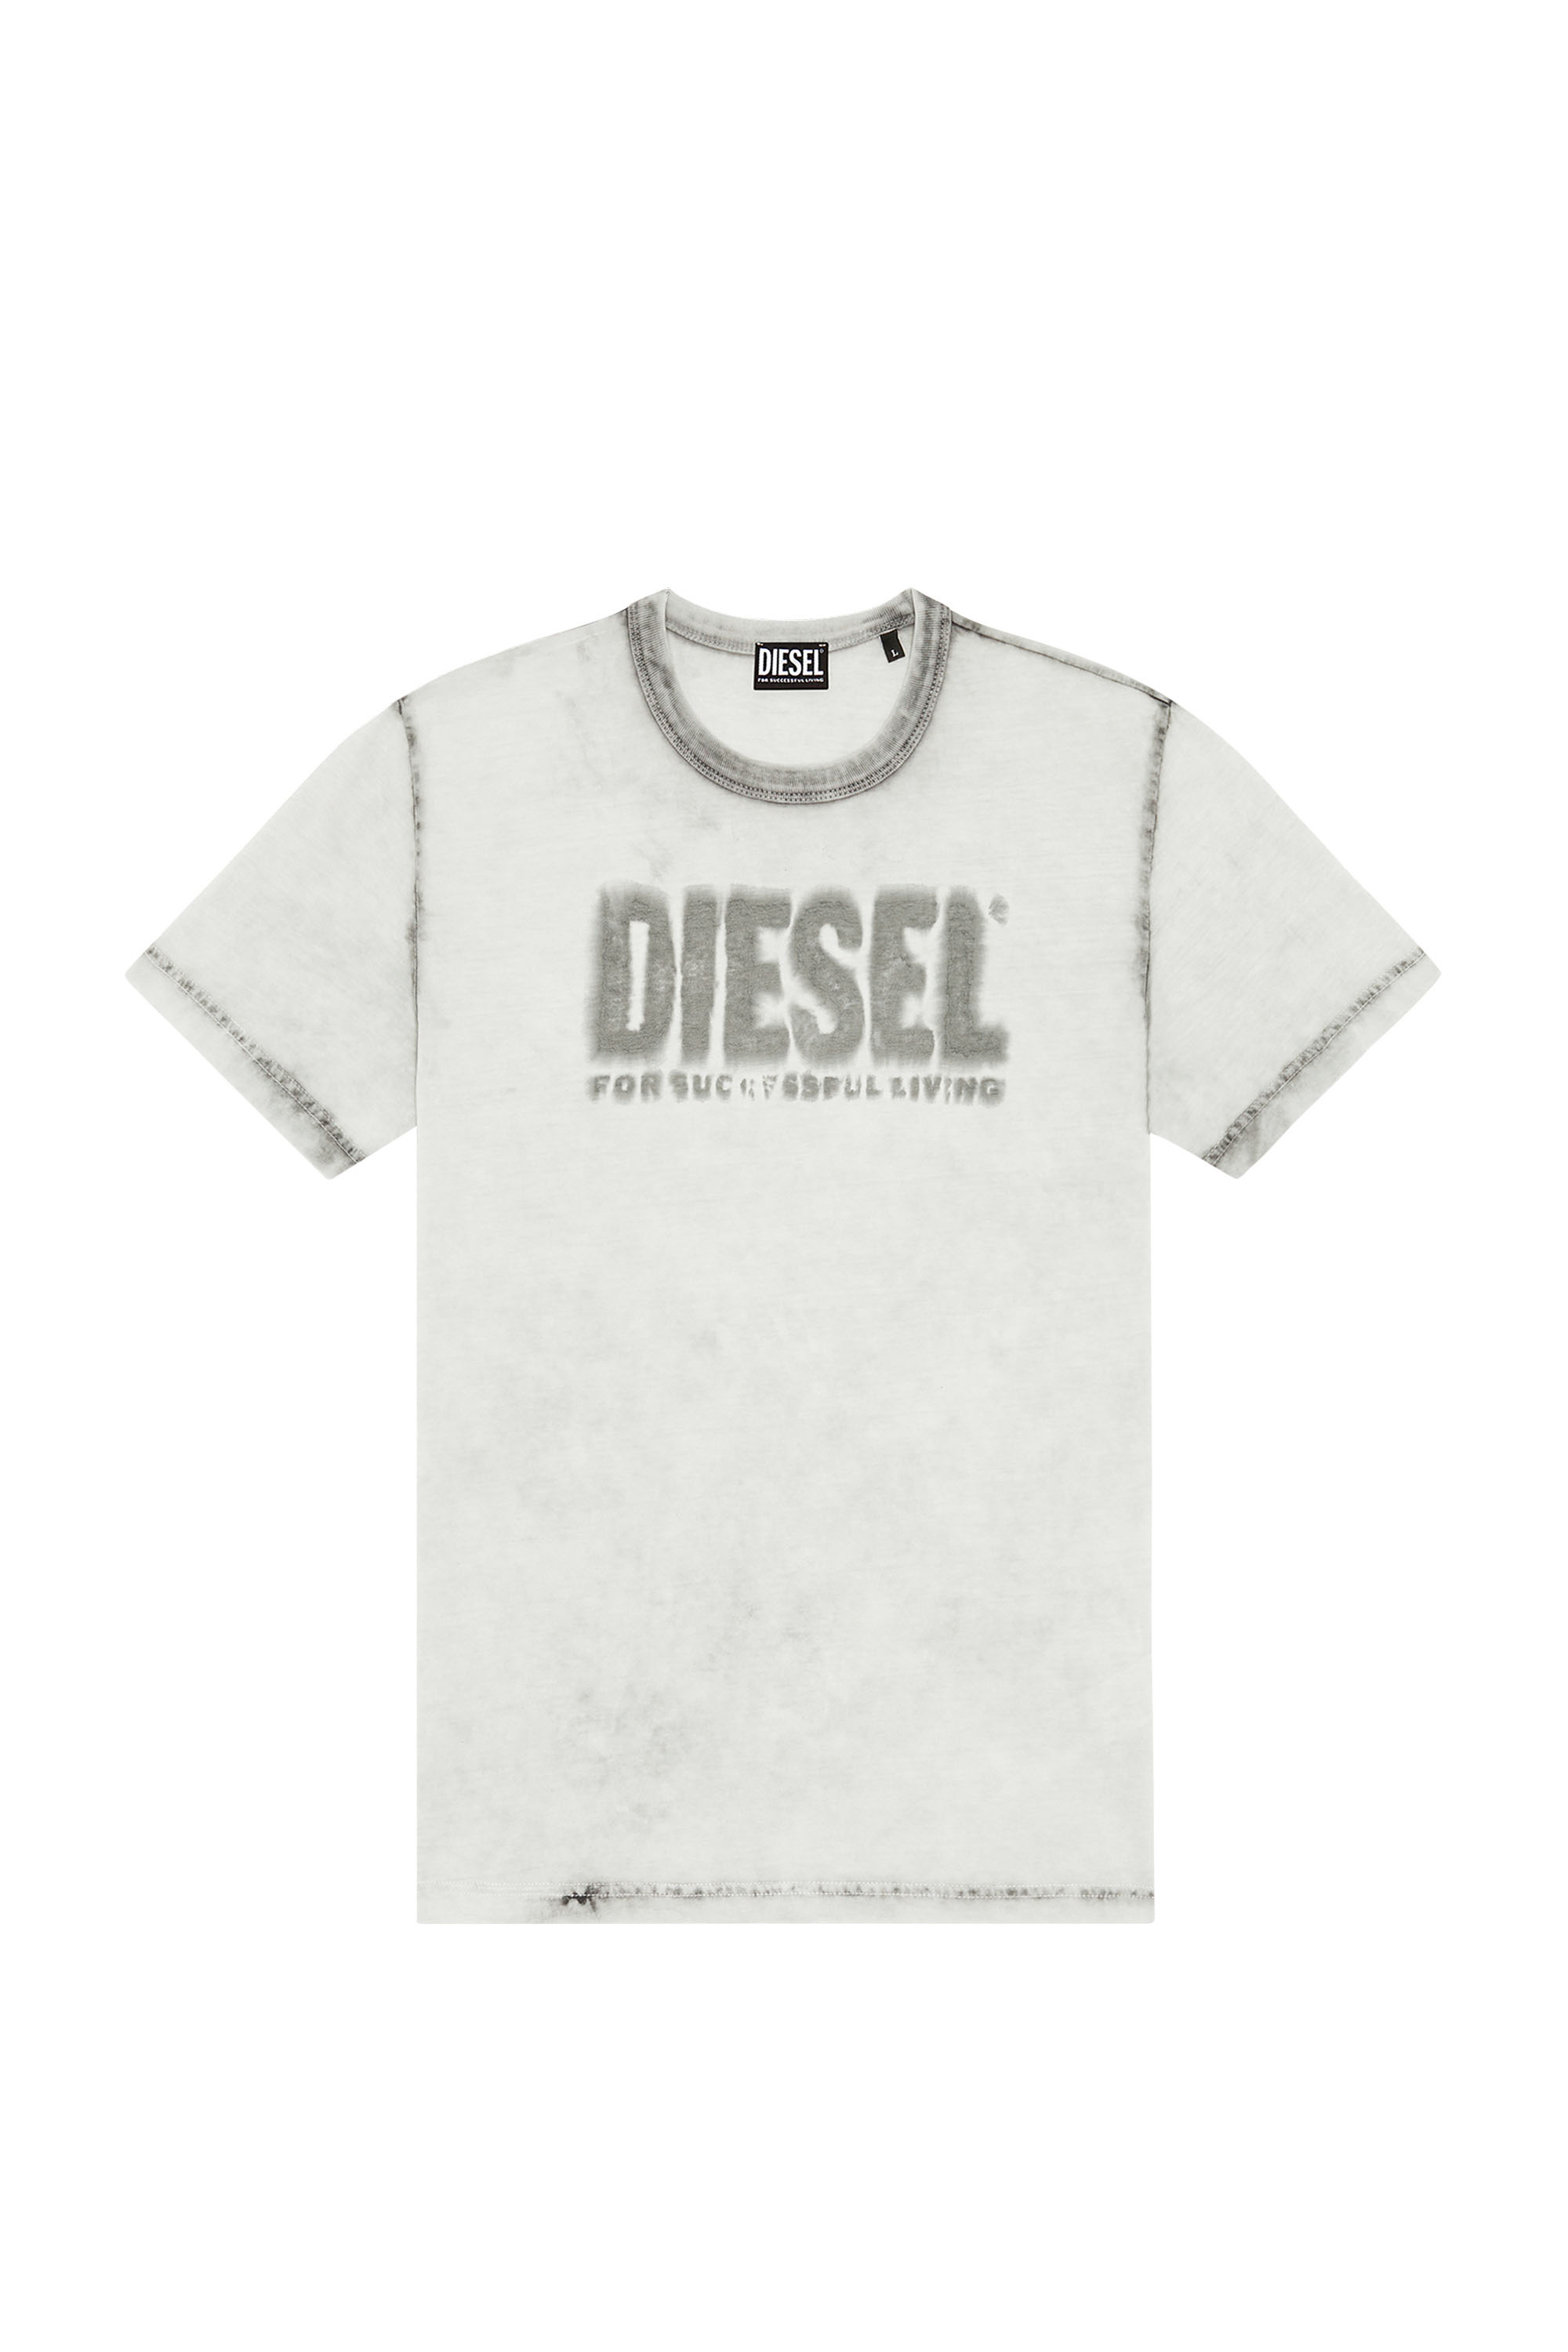 Diesel - T-DIEGOR-E6, Blanco - Image 1